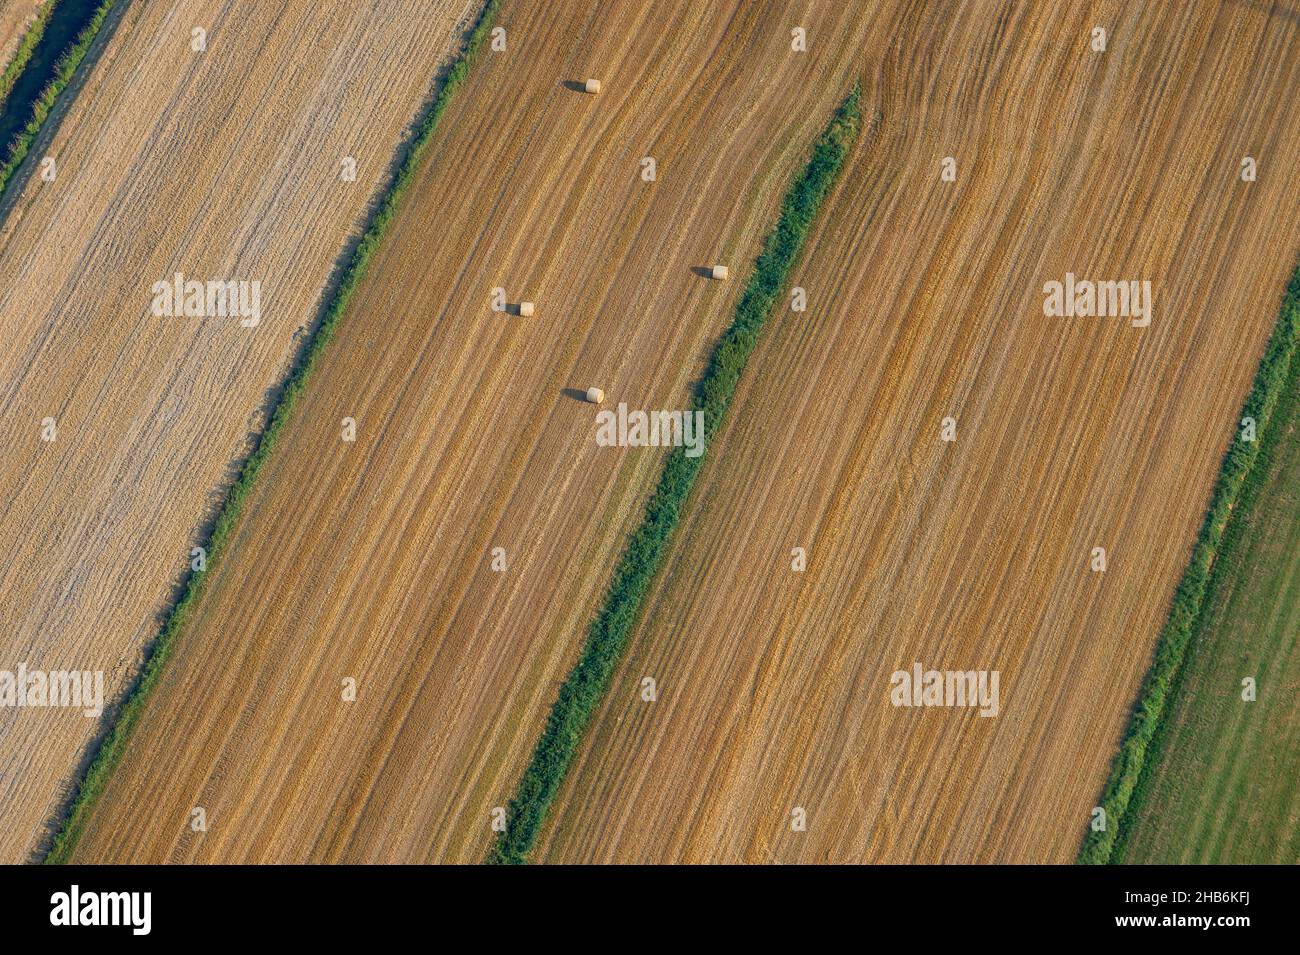 Campo de grano con fardos de paja redonda, vista aérea, Alemania, Schleswig-Holstein Foto de stock